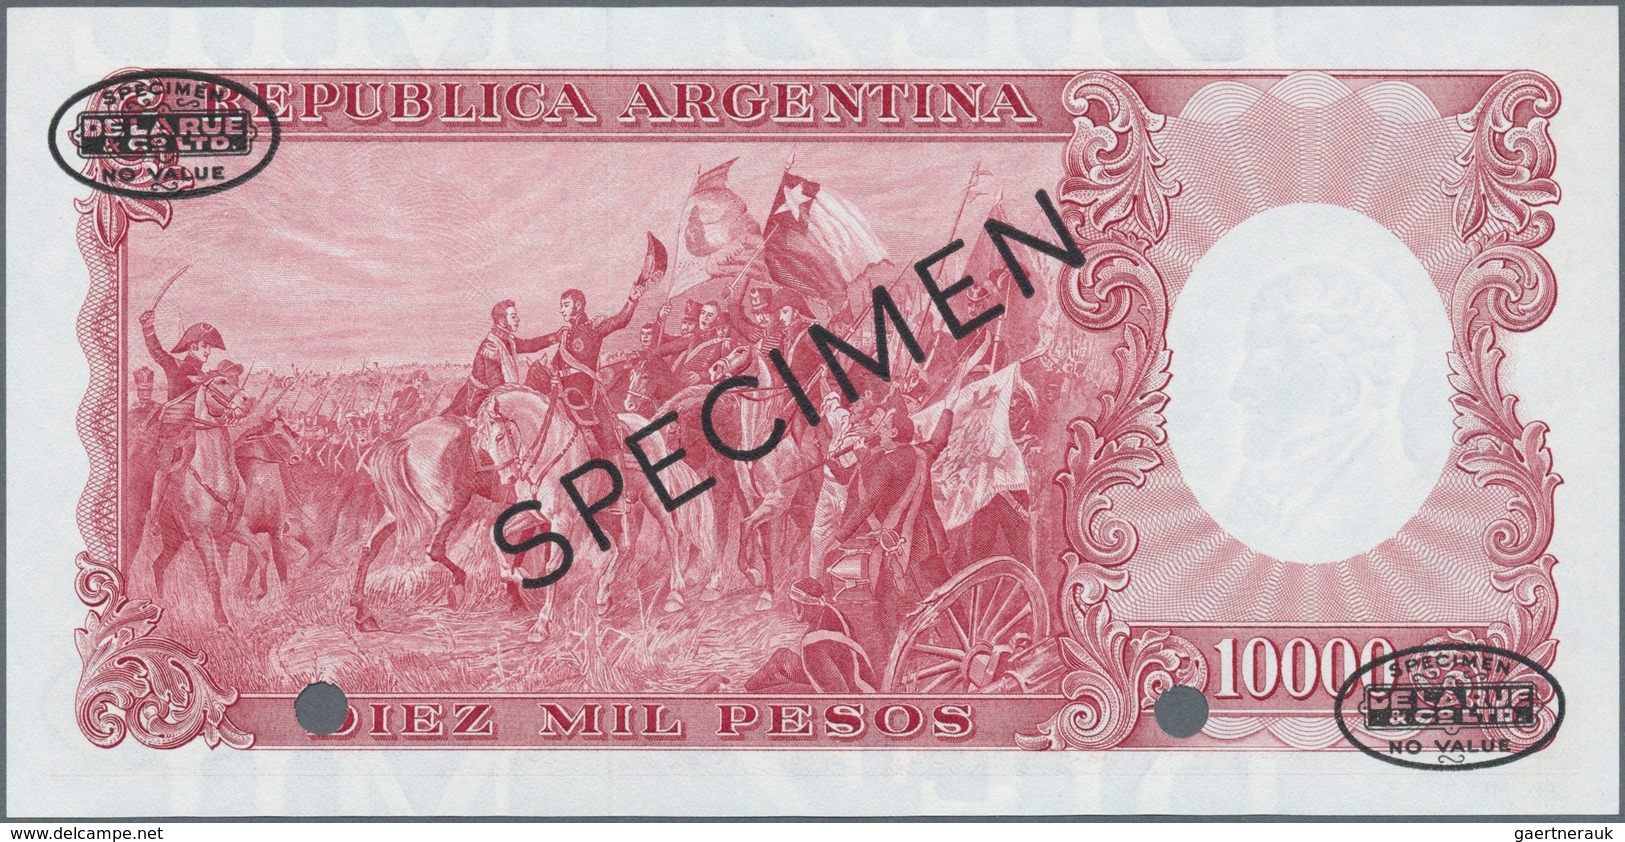 Argentina / Argentinien: Banco Central De La República Argentina 10.000 Pesos ND(1961-69) SPECIMEN, - Argentinien